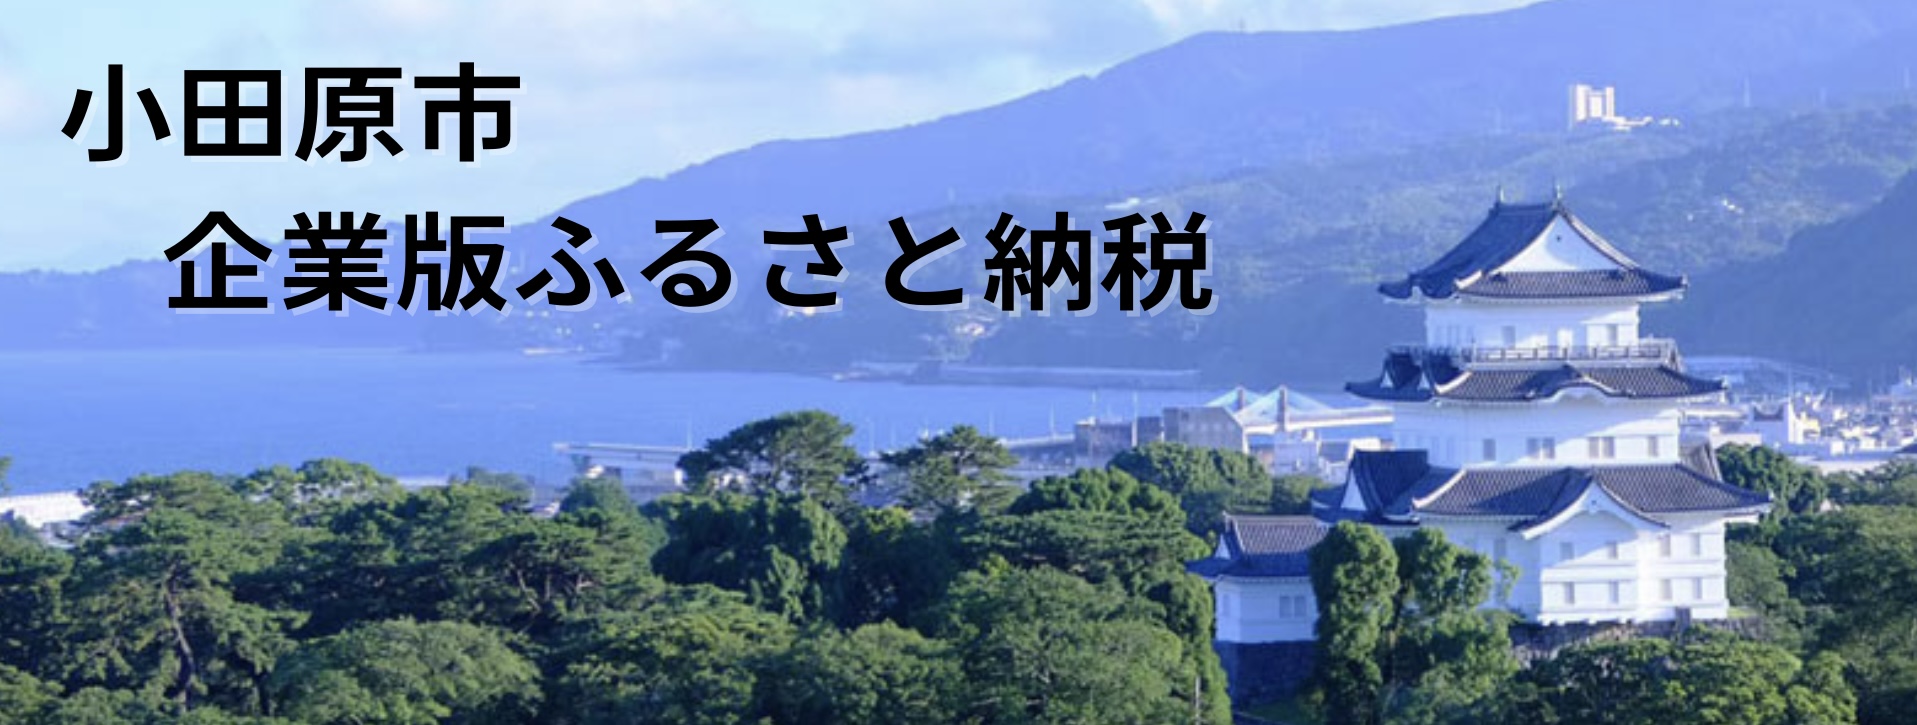 小田原市企業版ふるさと納税のバナー画像